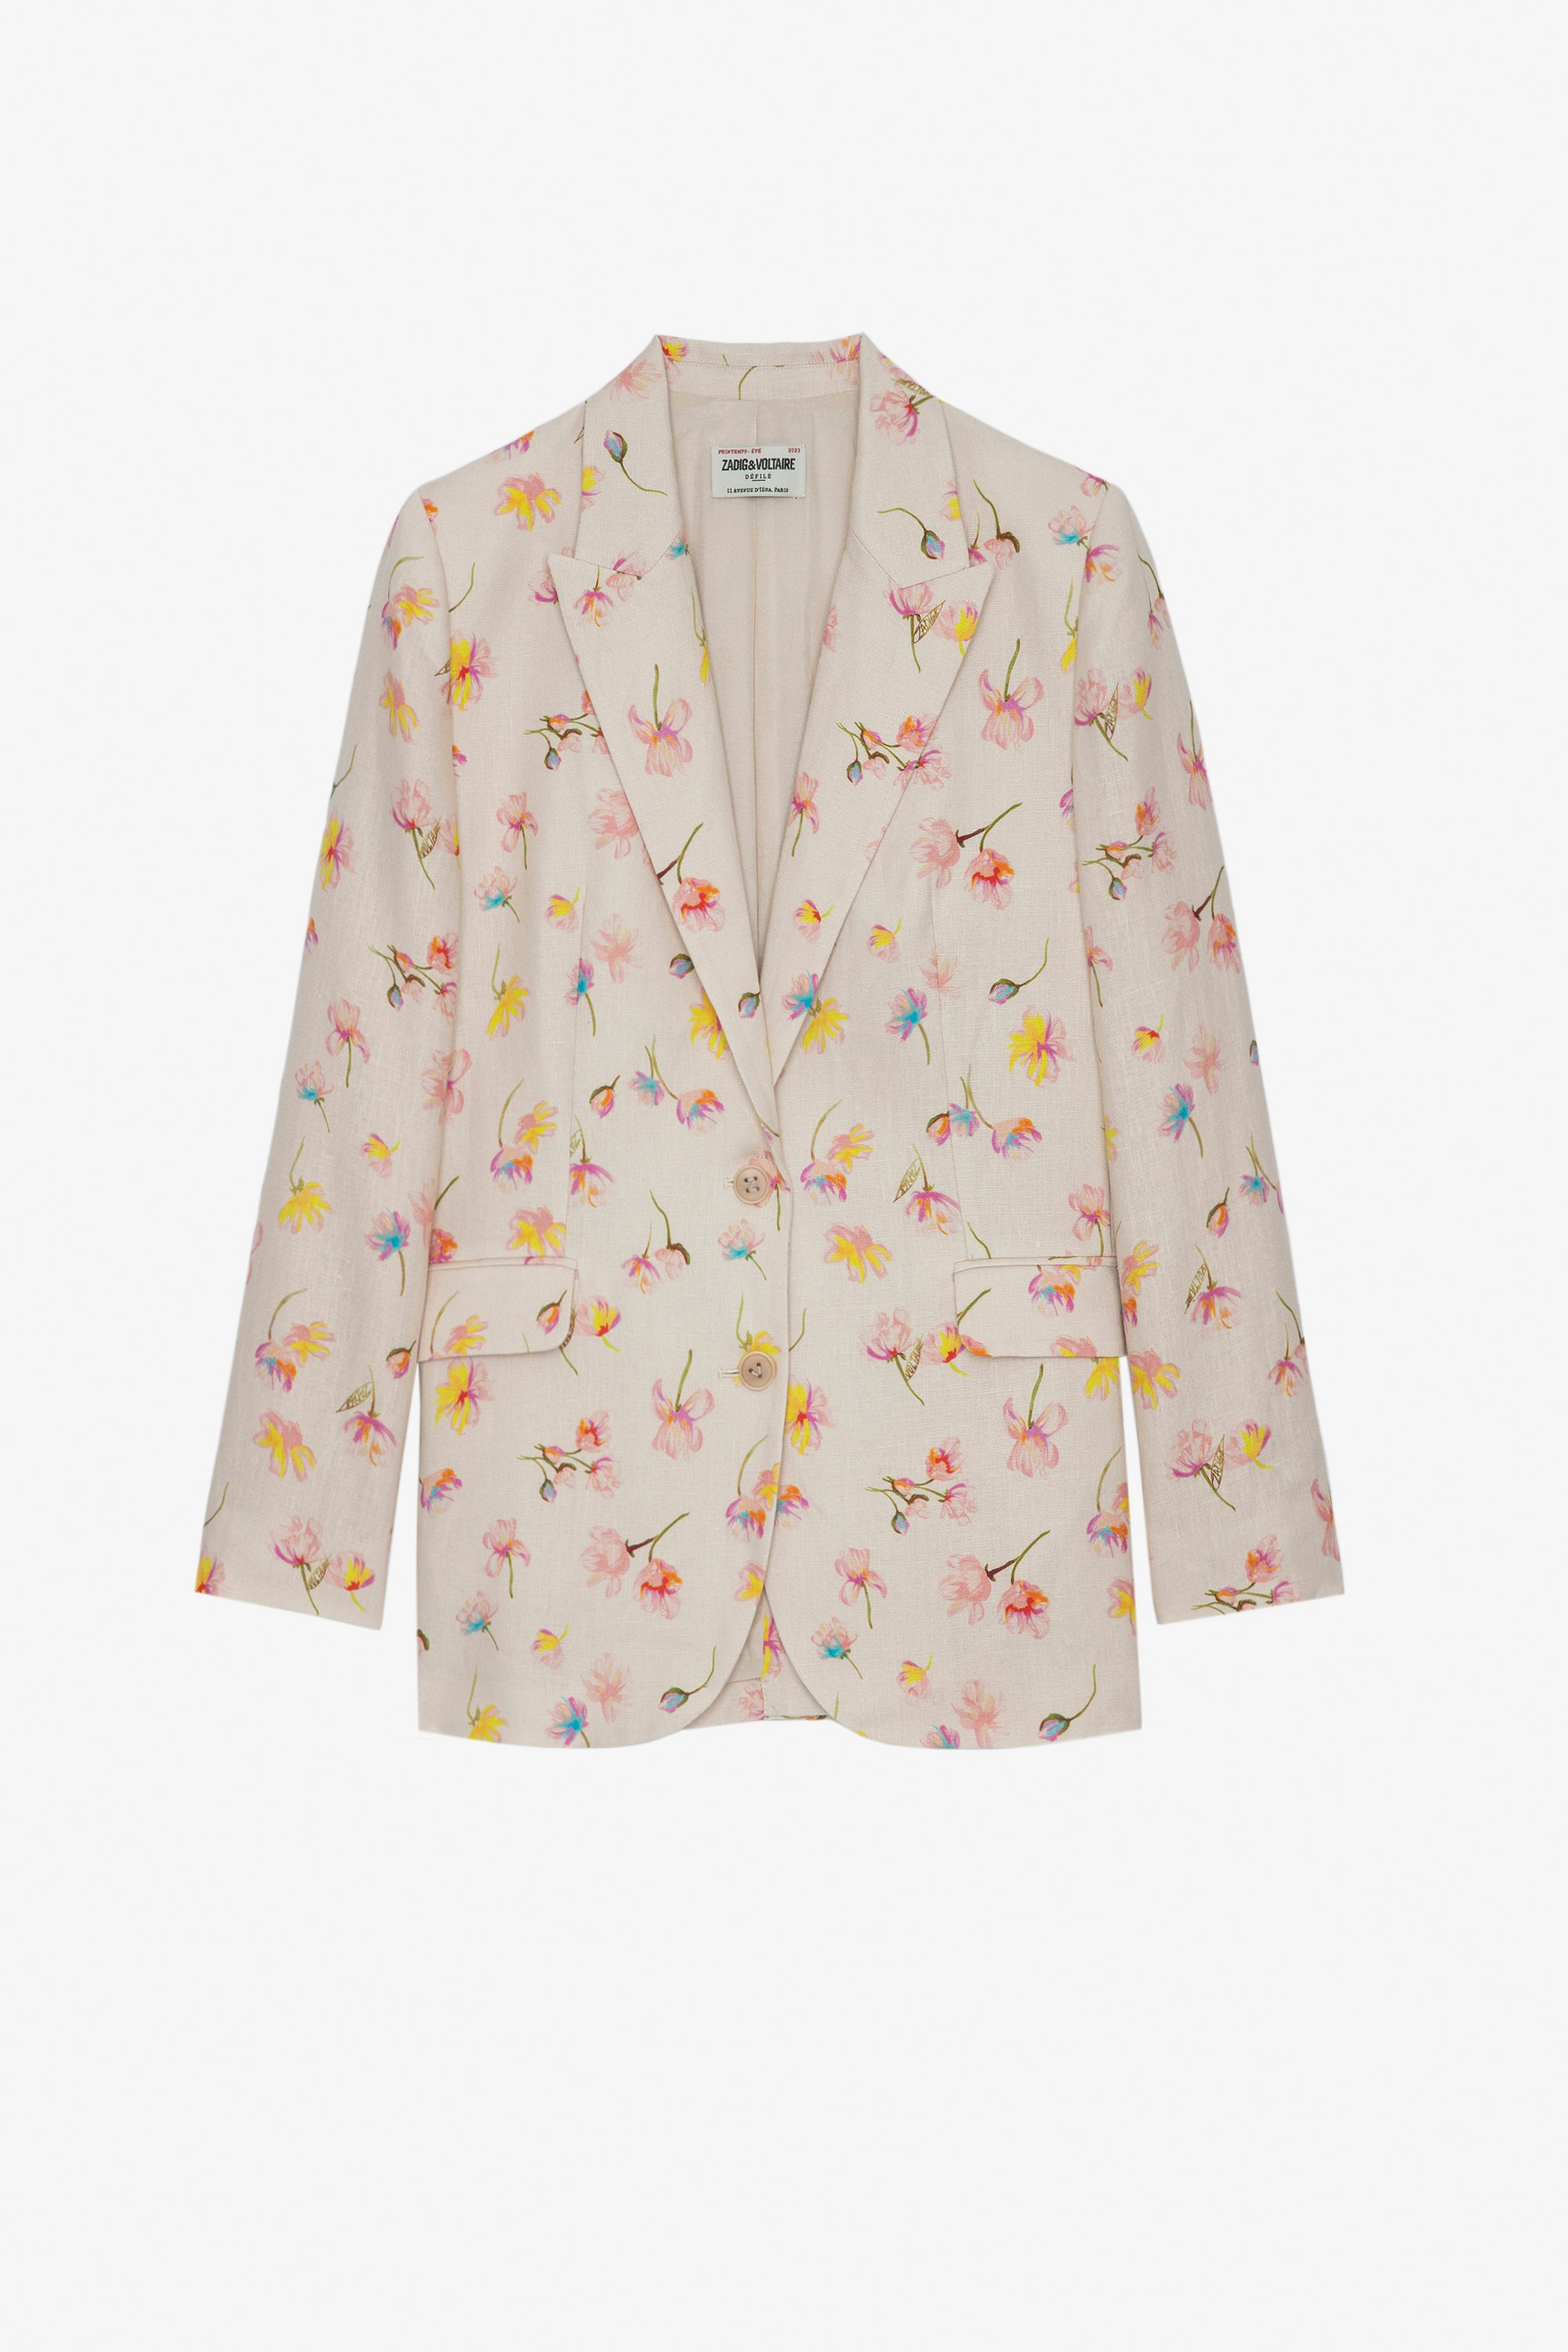 Vegy Linen Jacket Women's linen suit jacket in off-white floral print